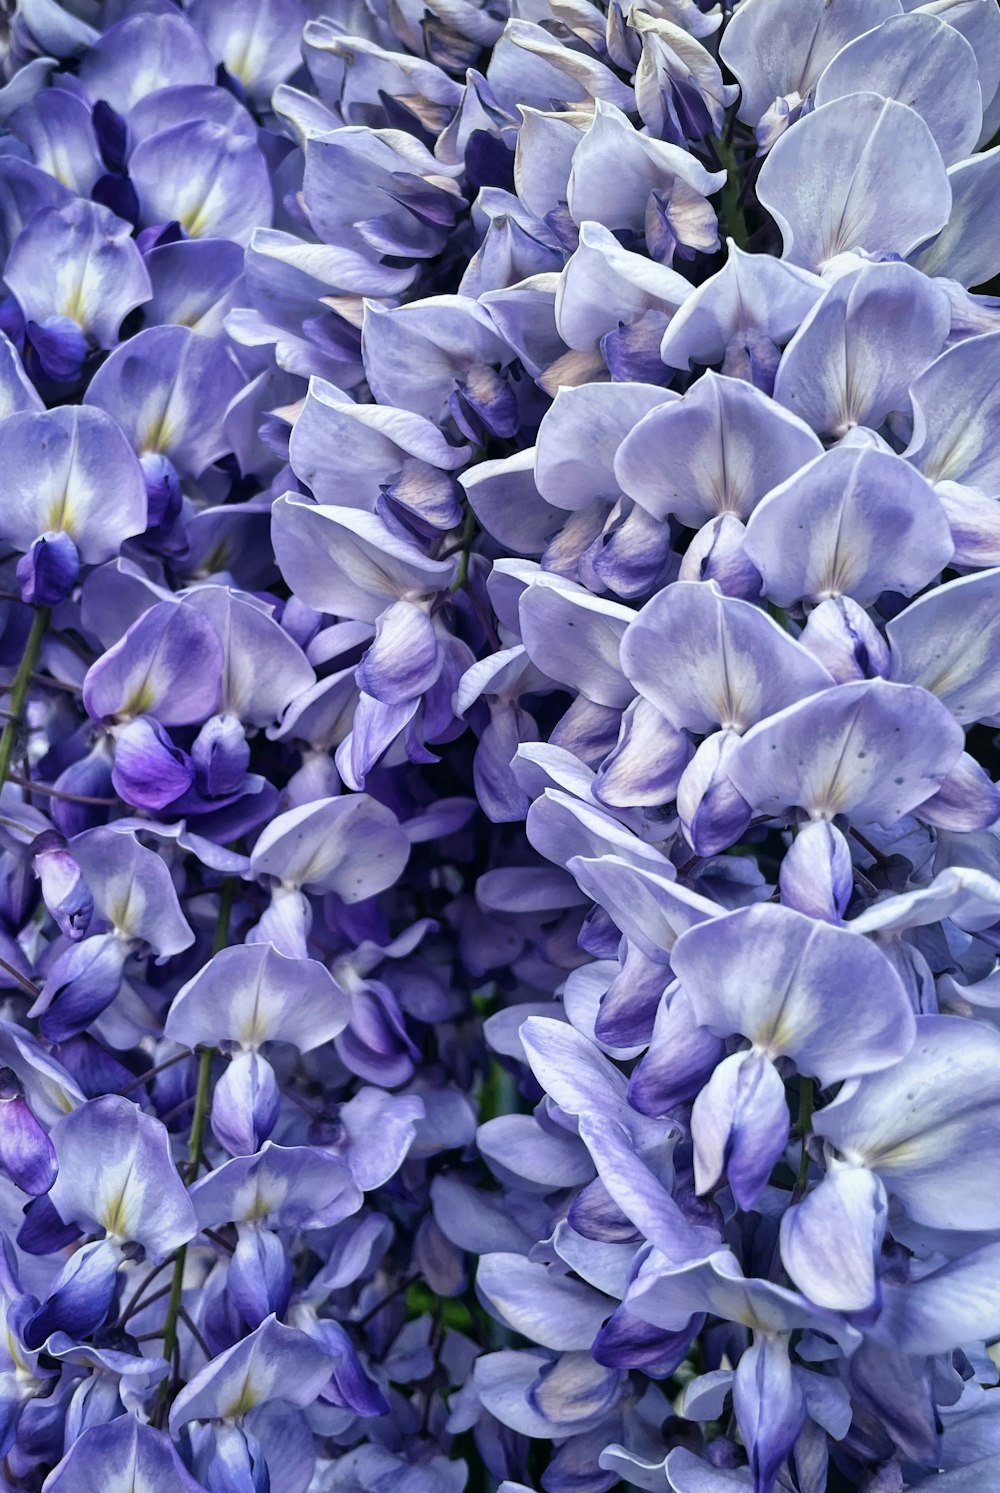 boccioli di fiori viola e bianchi